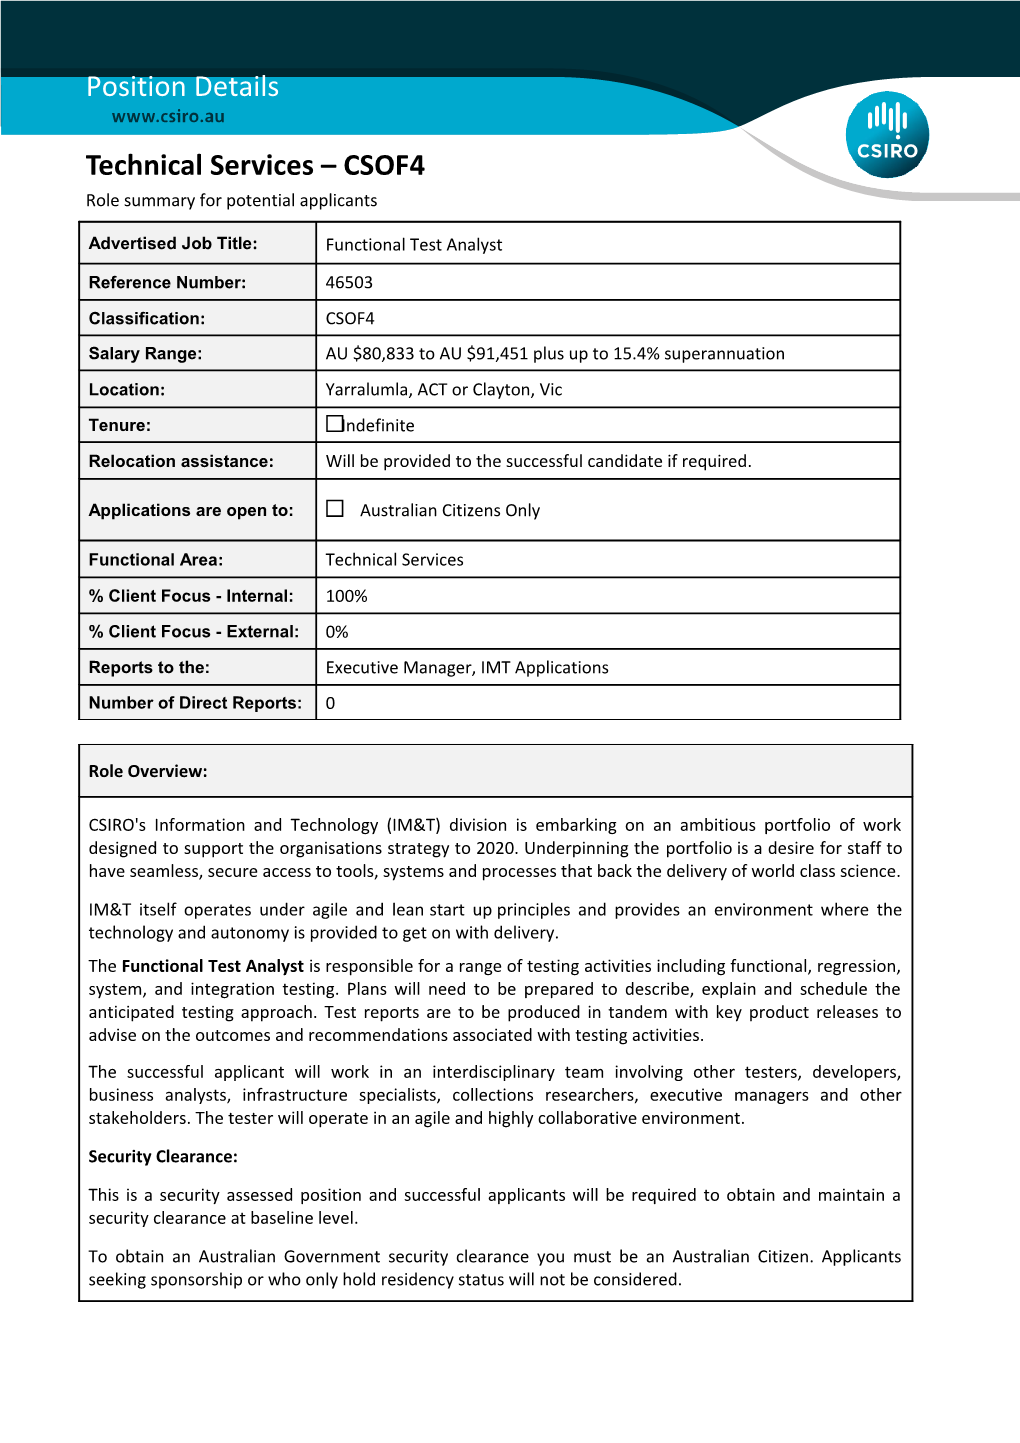 Position Details - Technical Services - CSOF5 s1